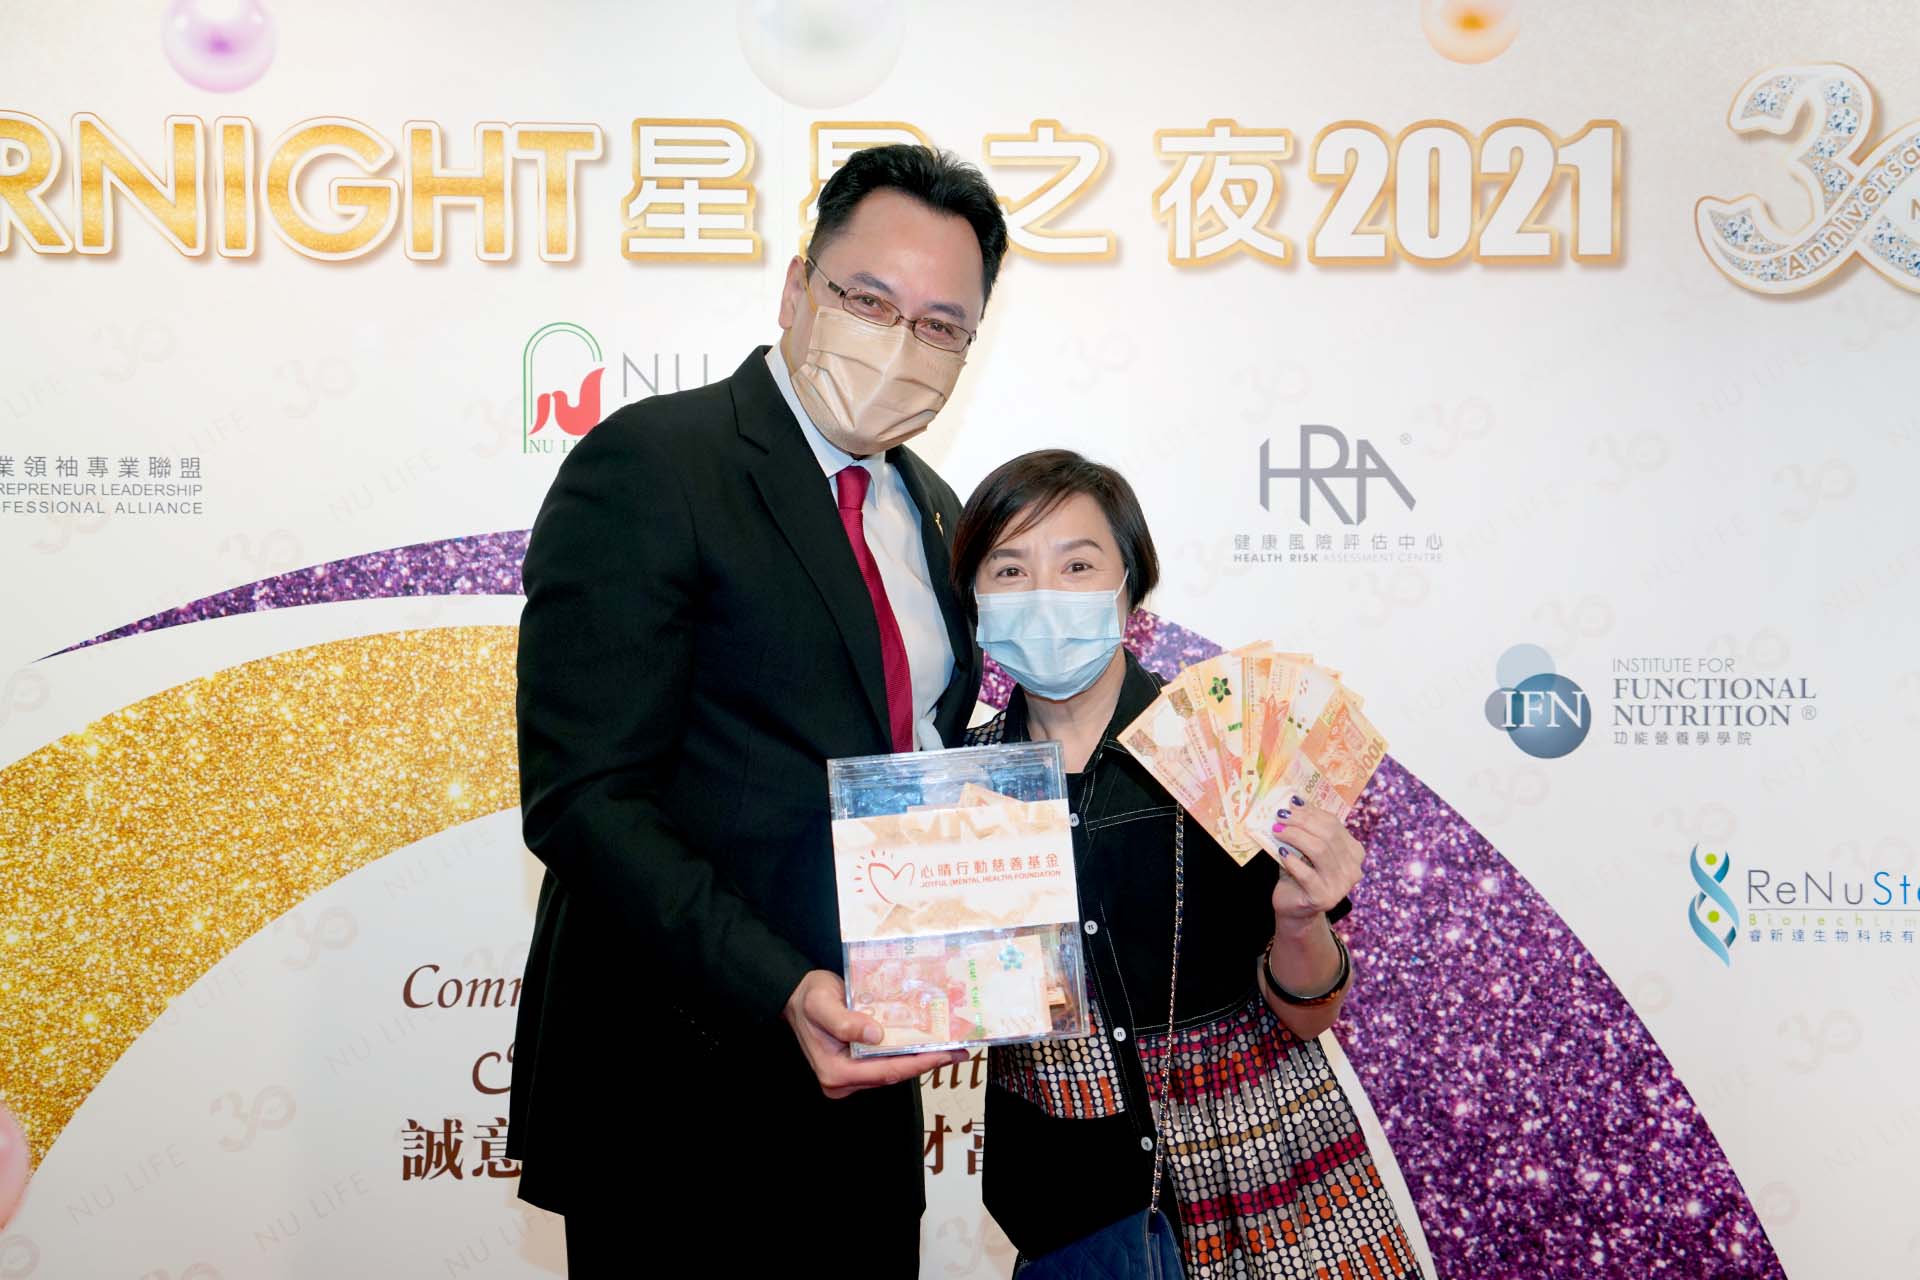 恭賀劉美娟女士從星級百萬富翁遊戲贏取HK$10,000獎金並與公司合共捐助HK$4000予「心晴行動慈善基金」